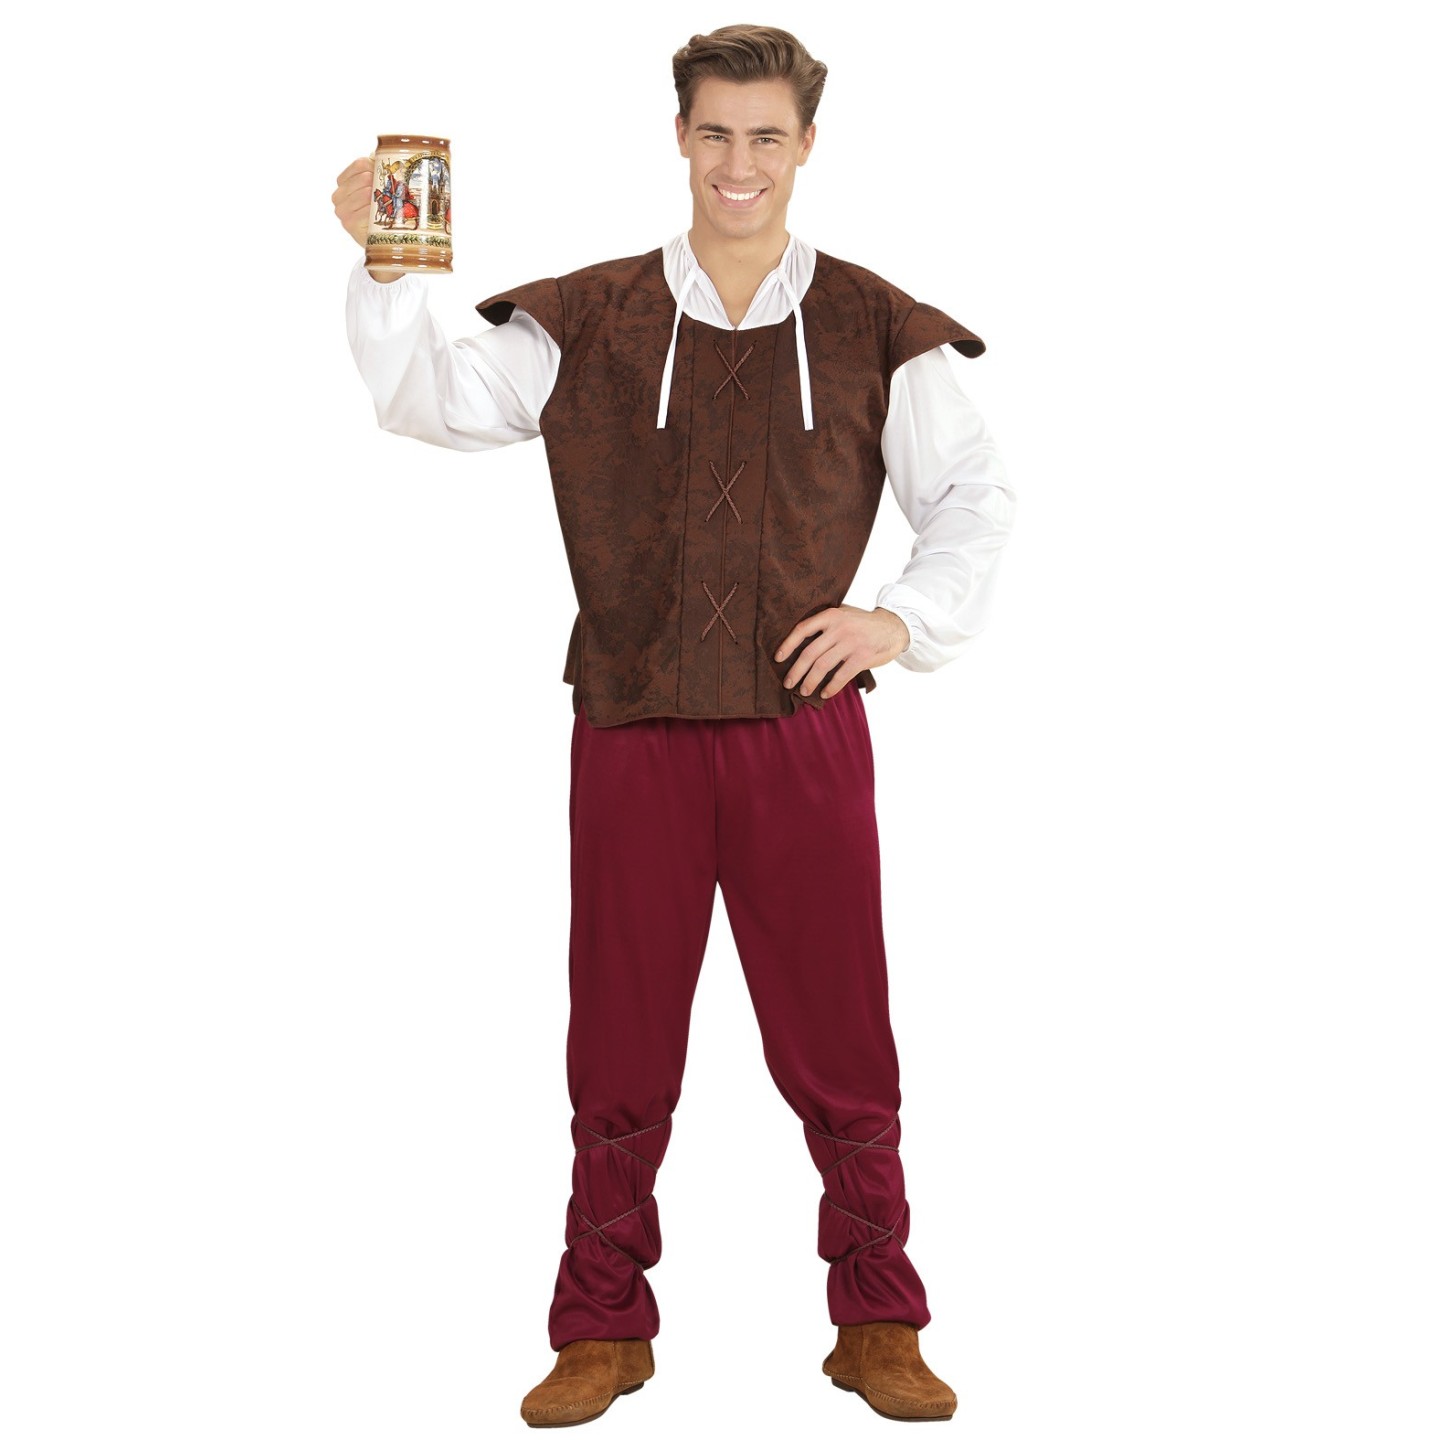 Middeleeuwse ober kostuum Breugel outfit man